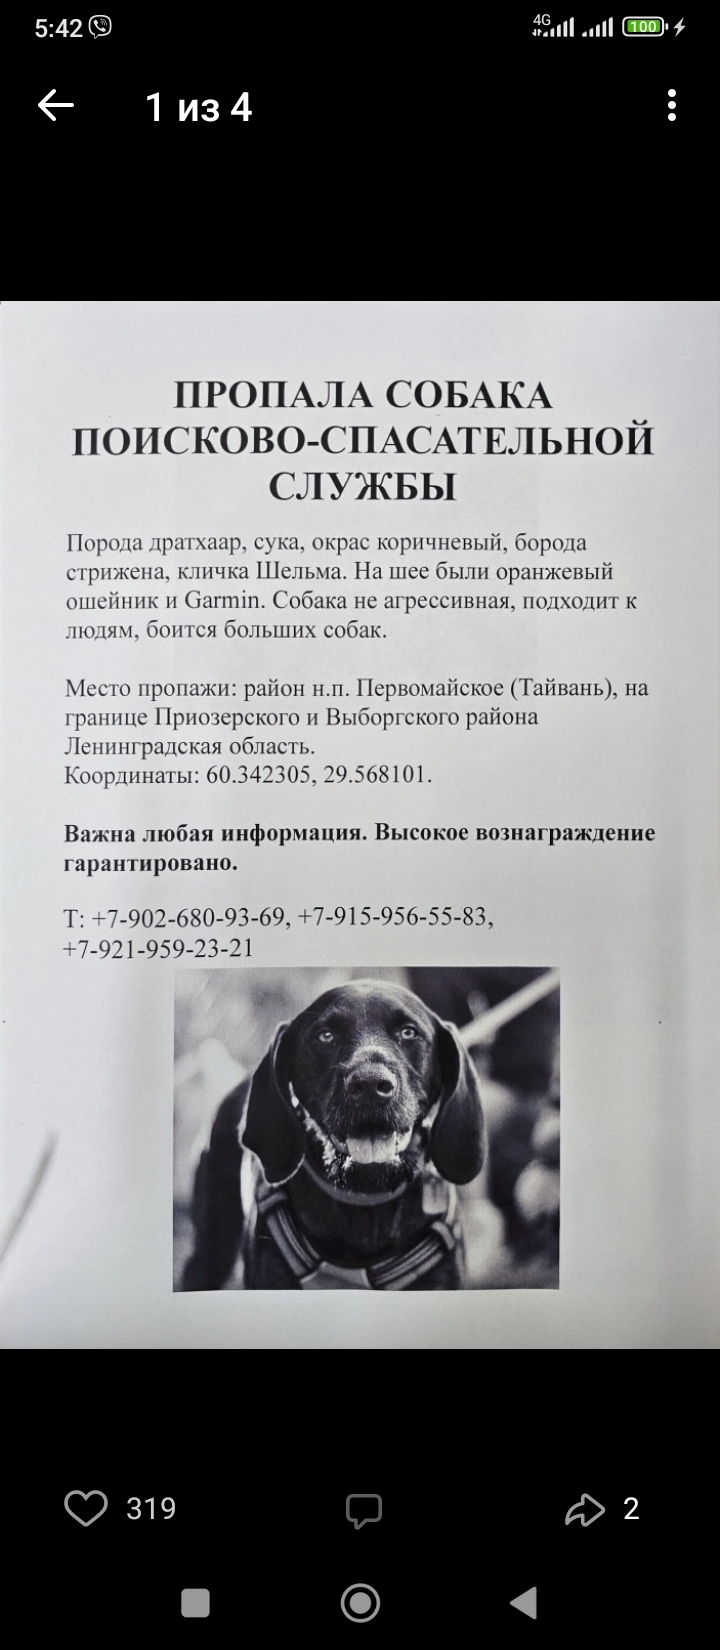 Пропала собака породы дратхаар, район н.п.Первомайское, Ленобласть